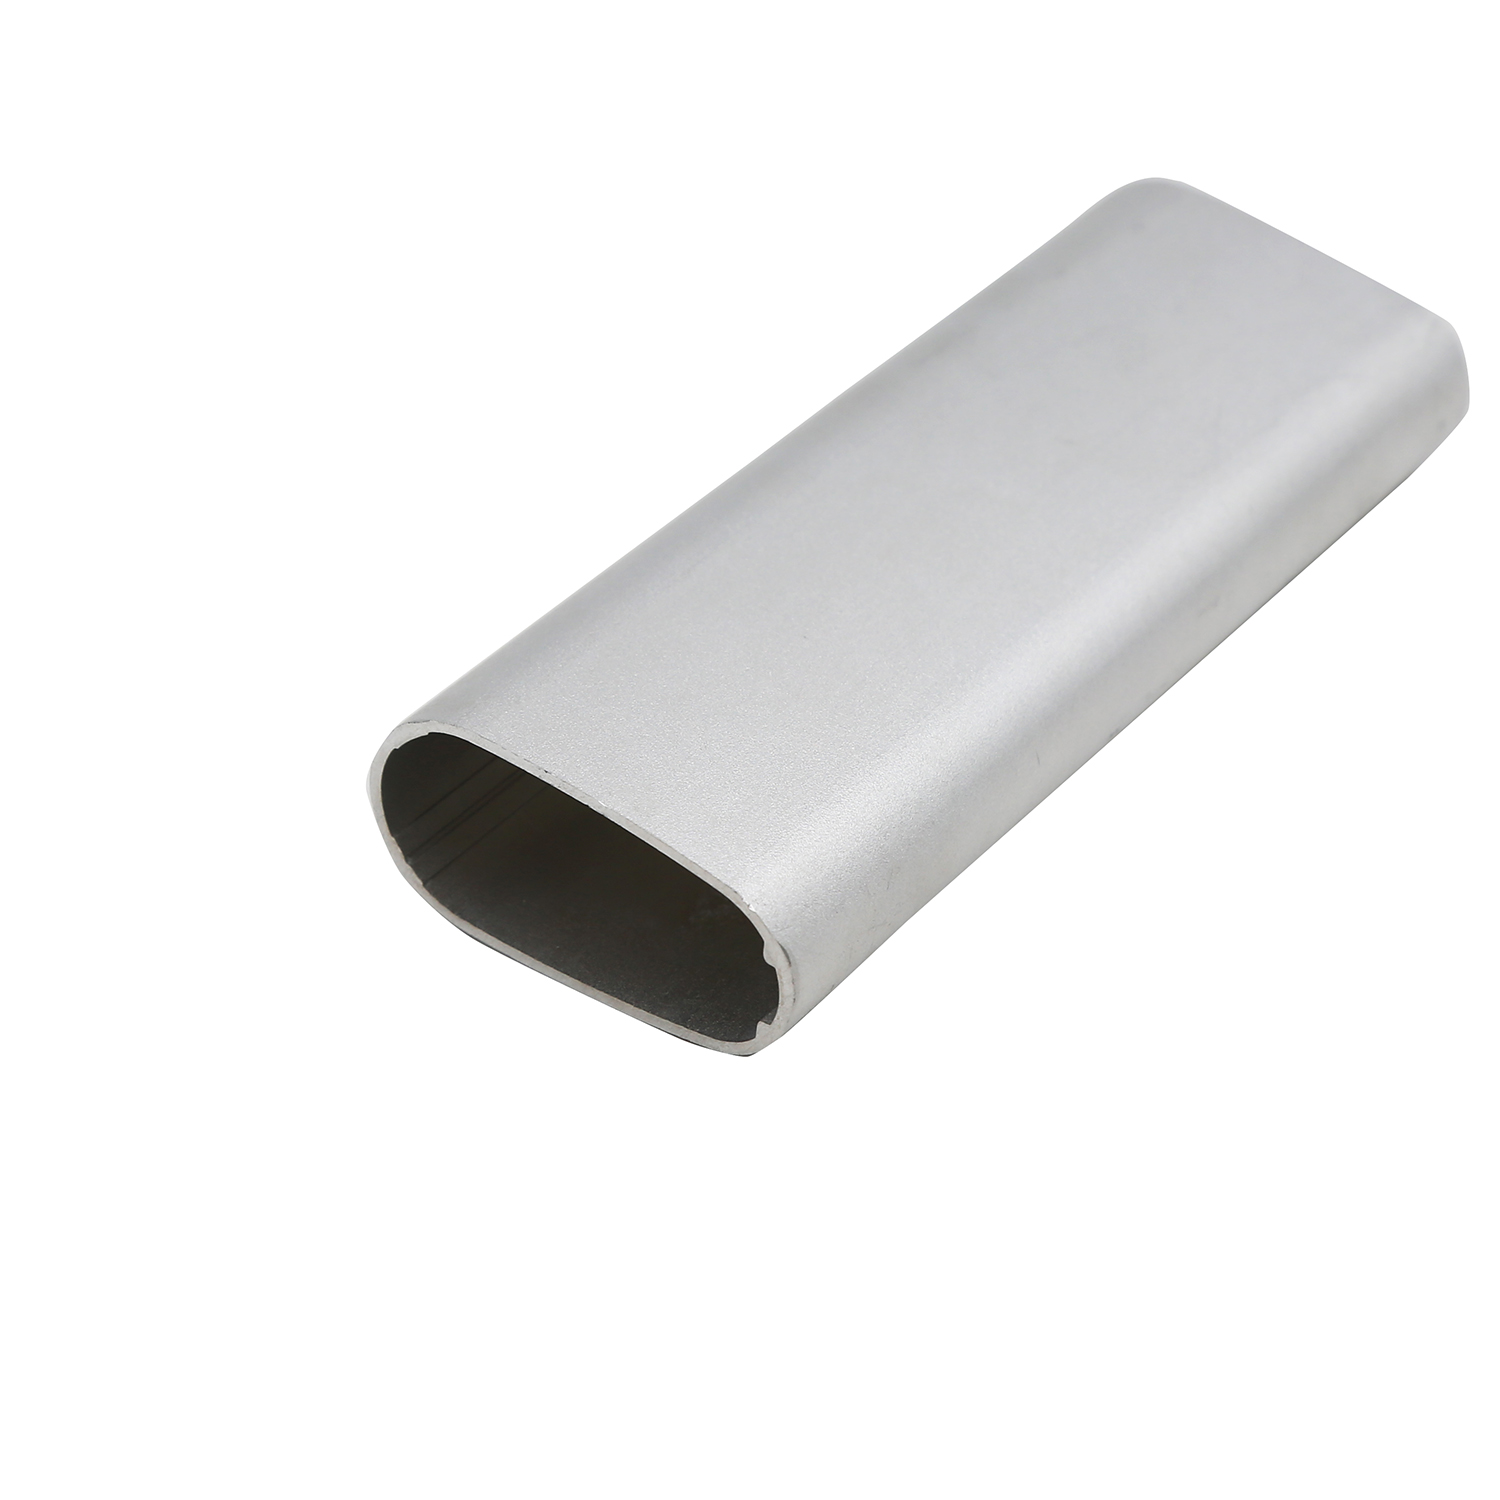 Aluminum extrusion profile for industrials tube